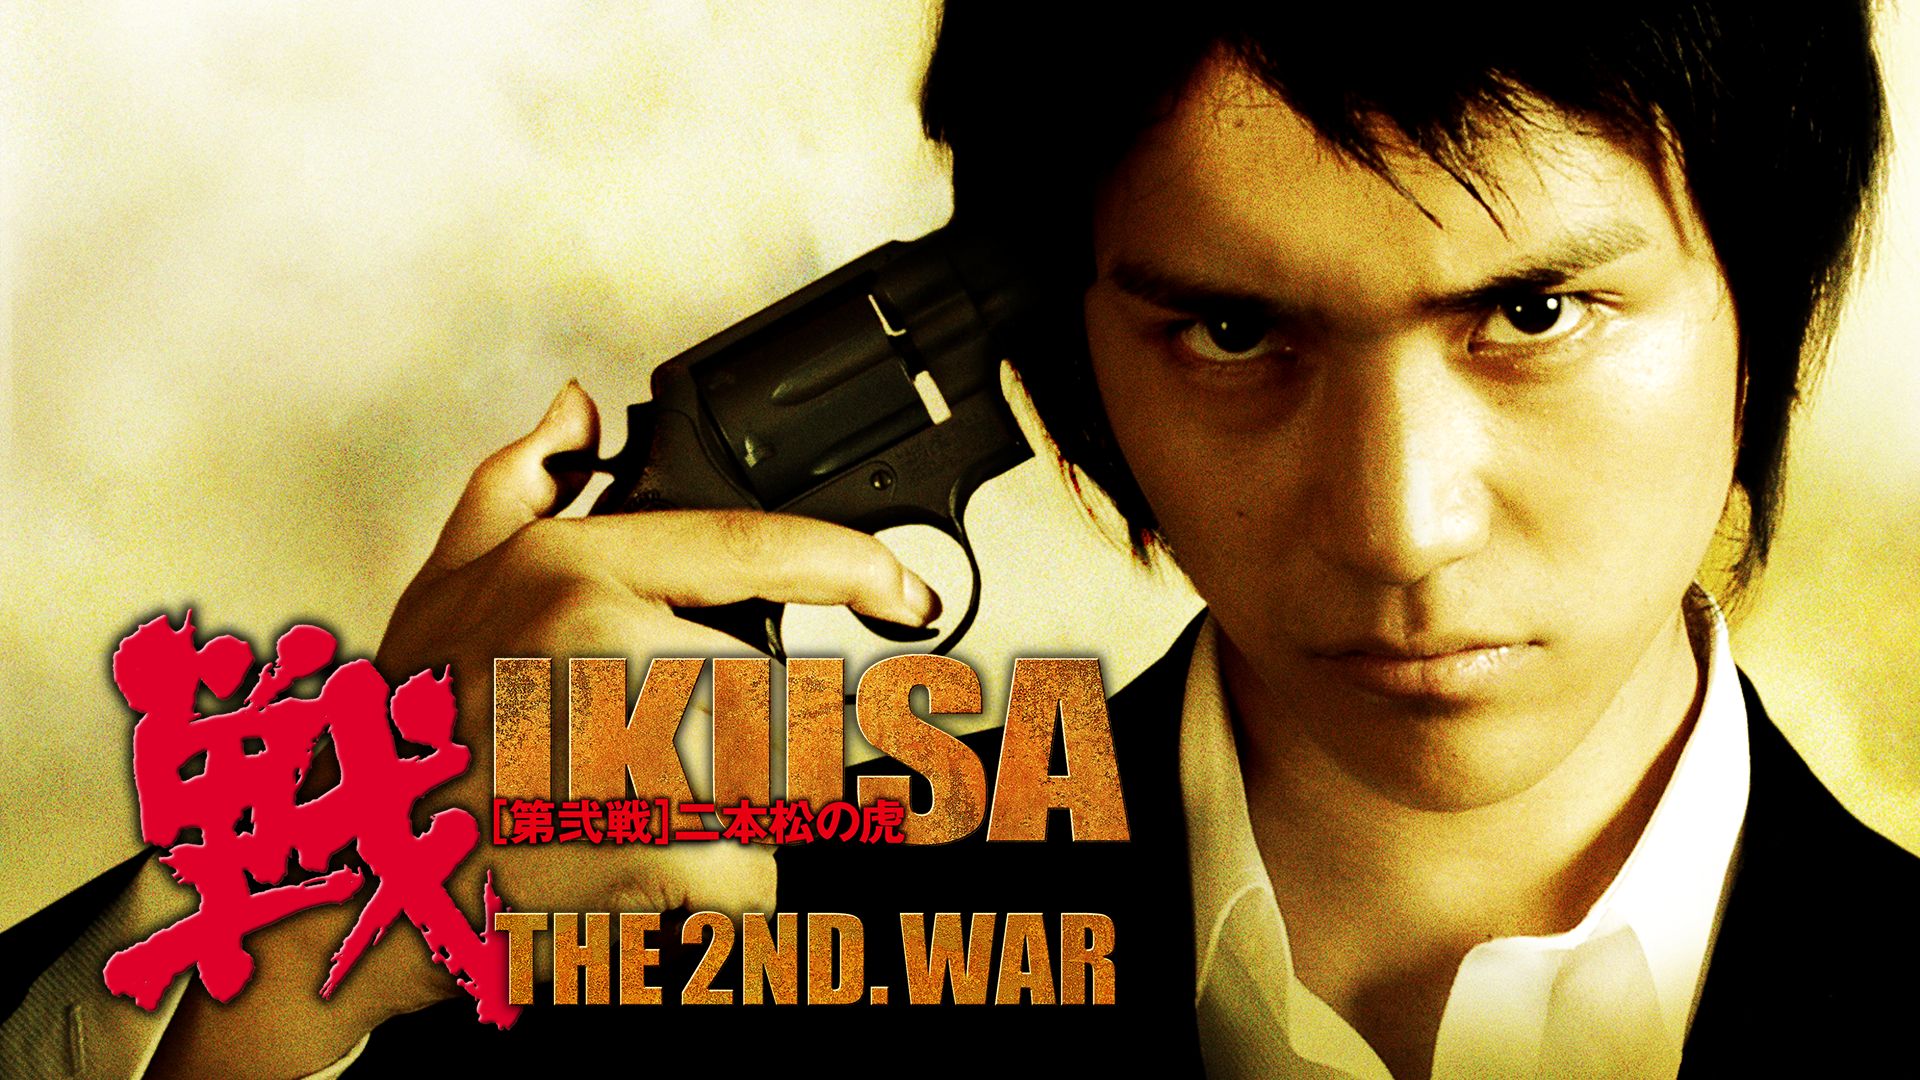 戦 第弐戦 二本松の虎 IKUSA THE 2ND. WAR